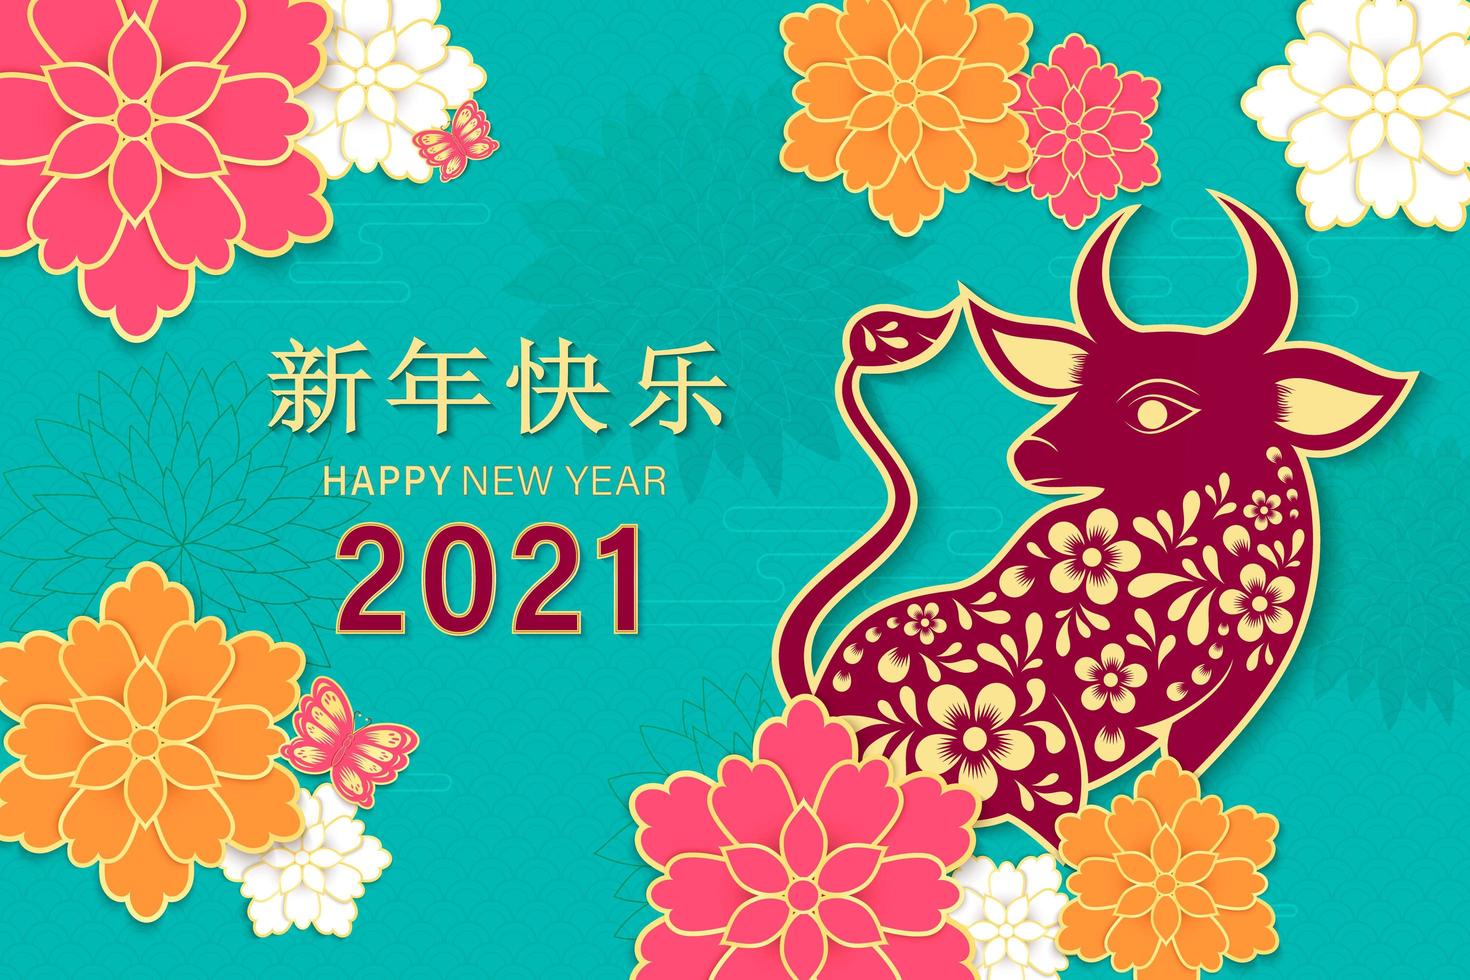 kinesiskt nyår 2021 år av oxen vektor